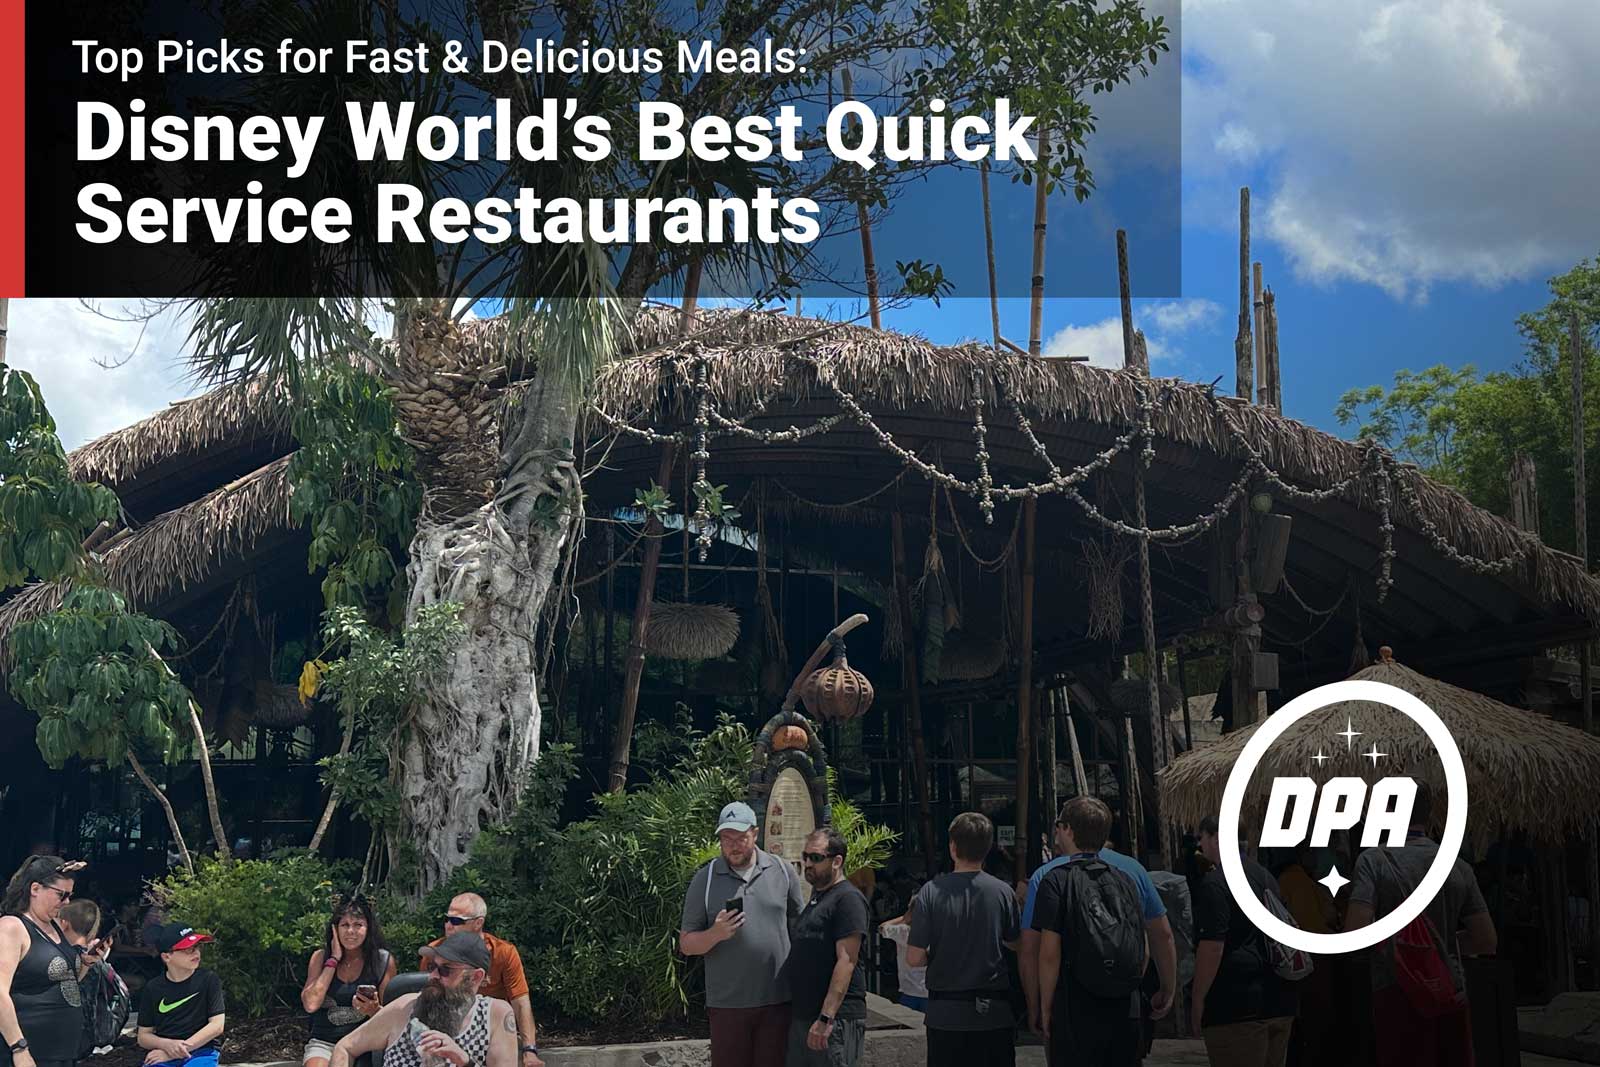 Disney World’s Best Quick Service Restaurants